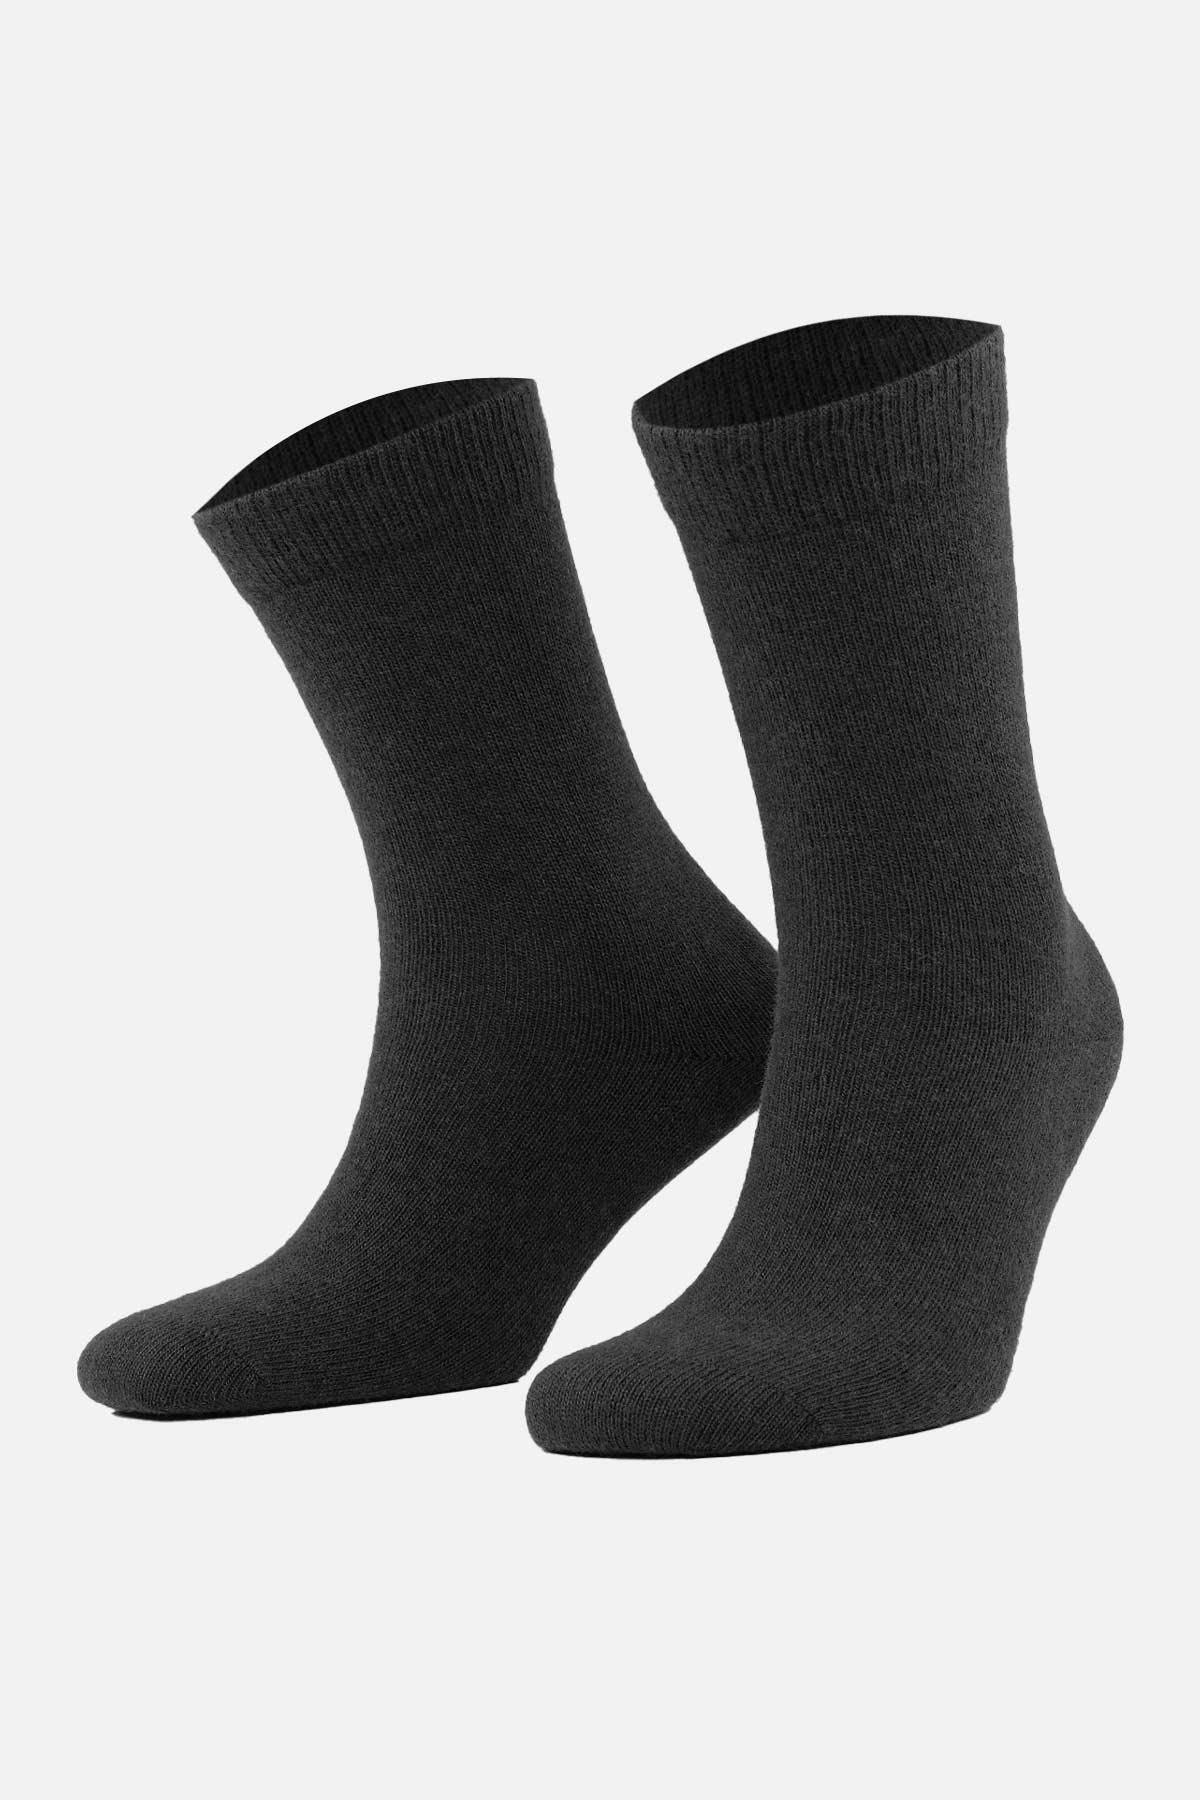 Aytuğ Kadın Koyun Yünü (LAMBSWOOL) Tekli Siyah Soket Çorap A 45000 S